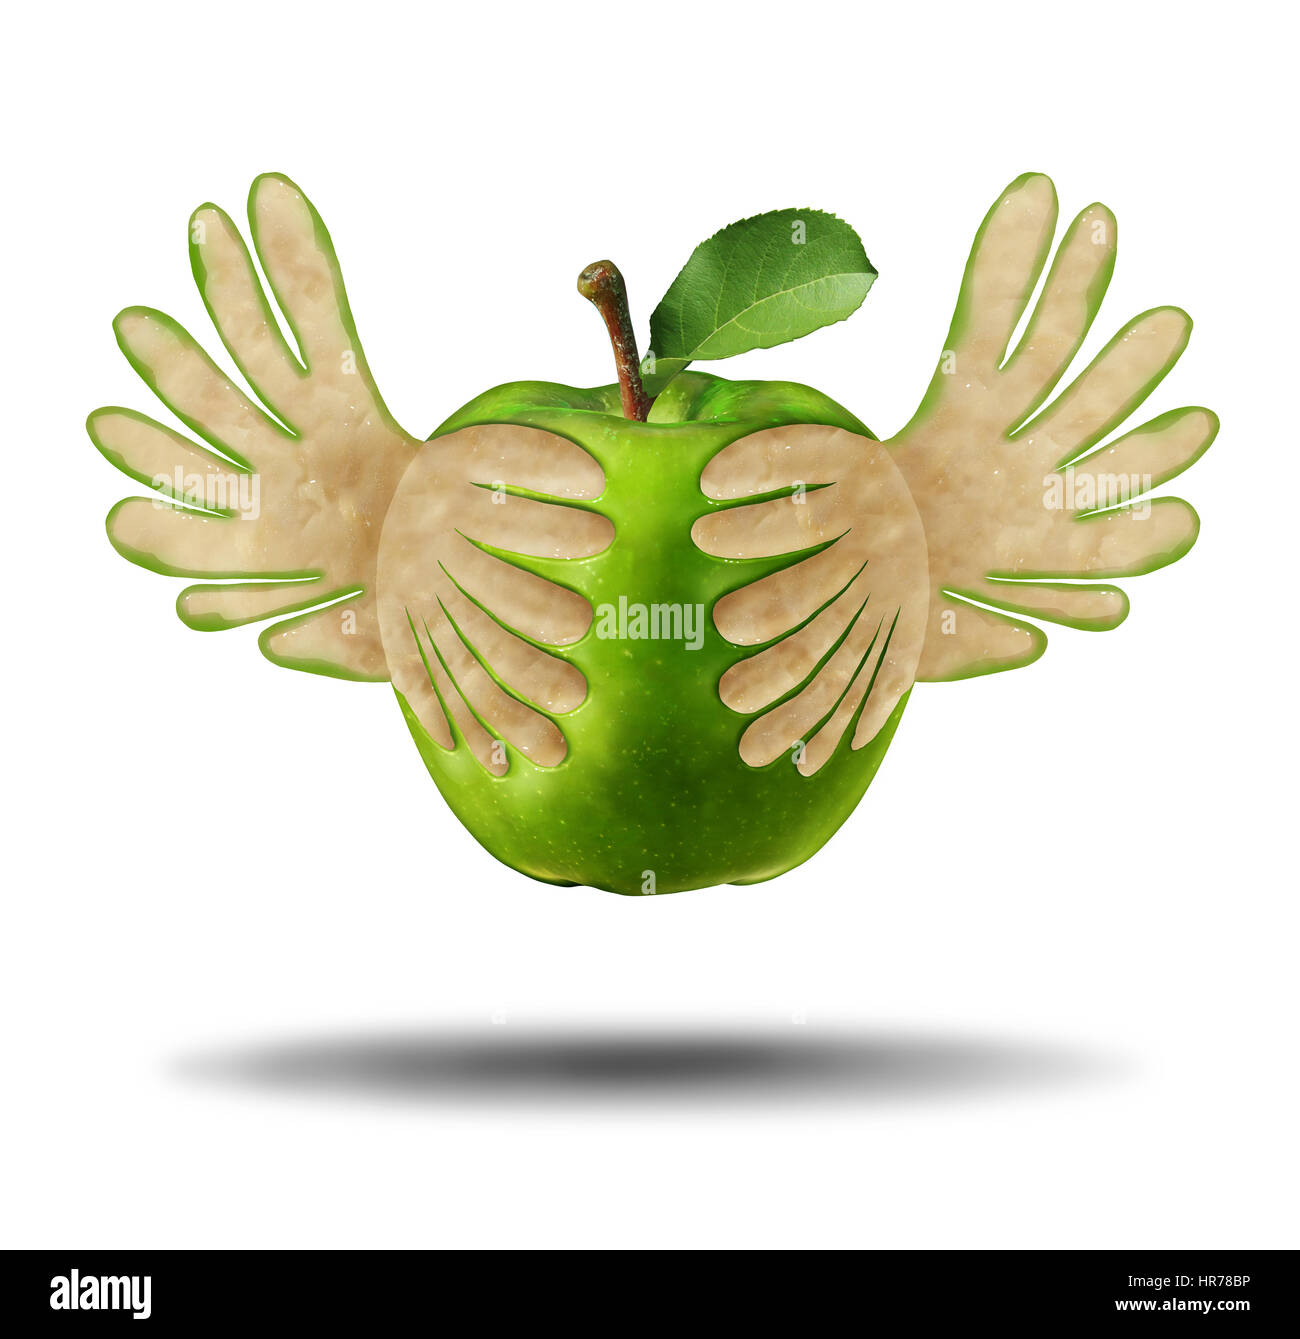 Essen Licht, gesunde Ernährung als ein grüner Apfel mit der Schale geformt als fliegende Flügel als Symbol für die Kraft der frischen Ernährung. Stockfoto